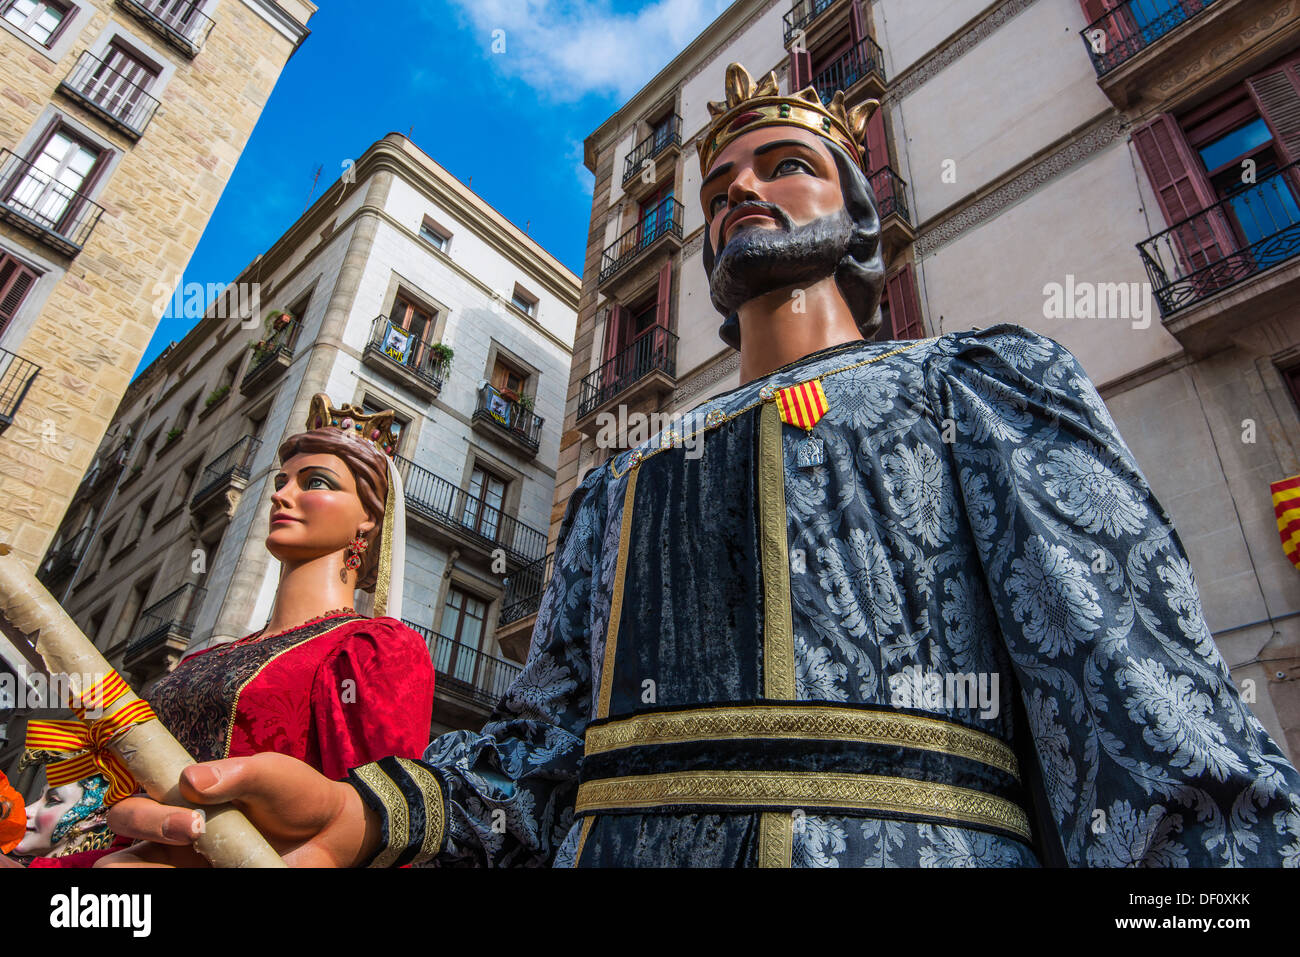 Les Gegants (Giants) parade de la Plaza San Jaume au cours de la Mercè, festival de Barcelone, Catalogne, Espagne Banque D'Images